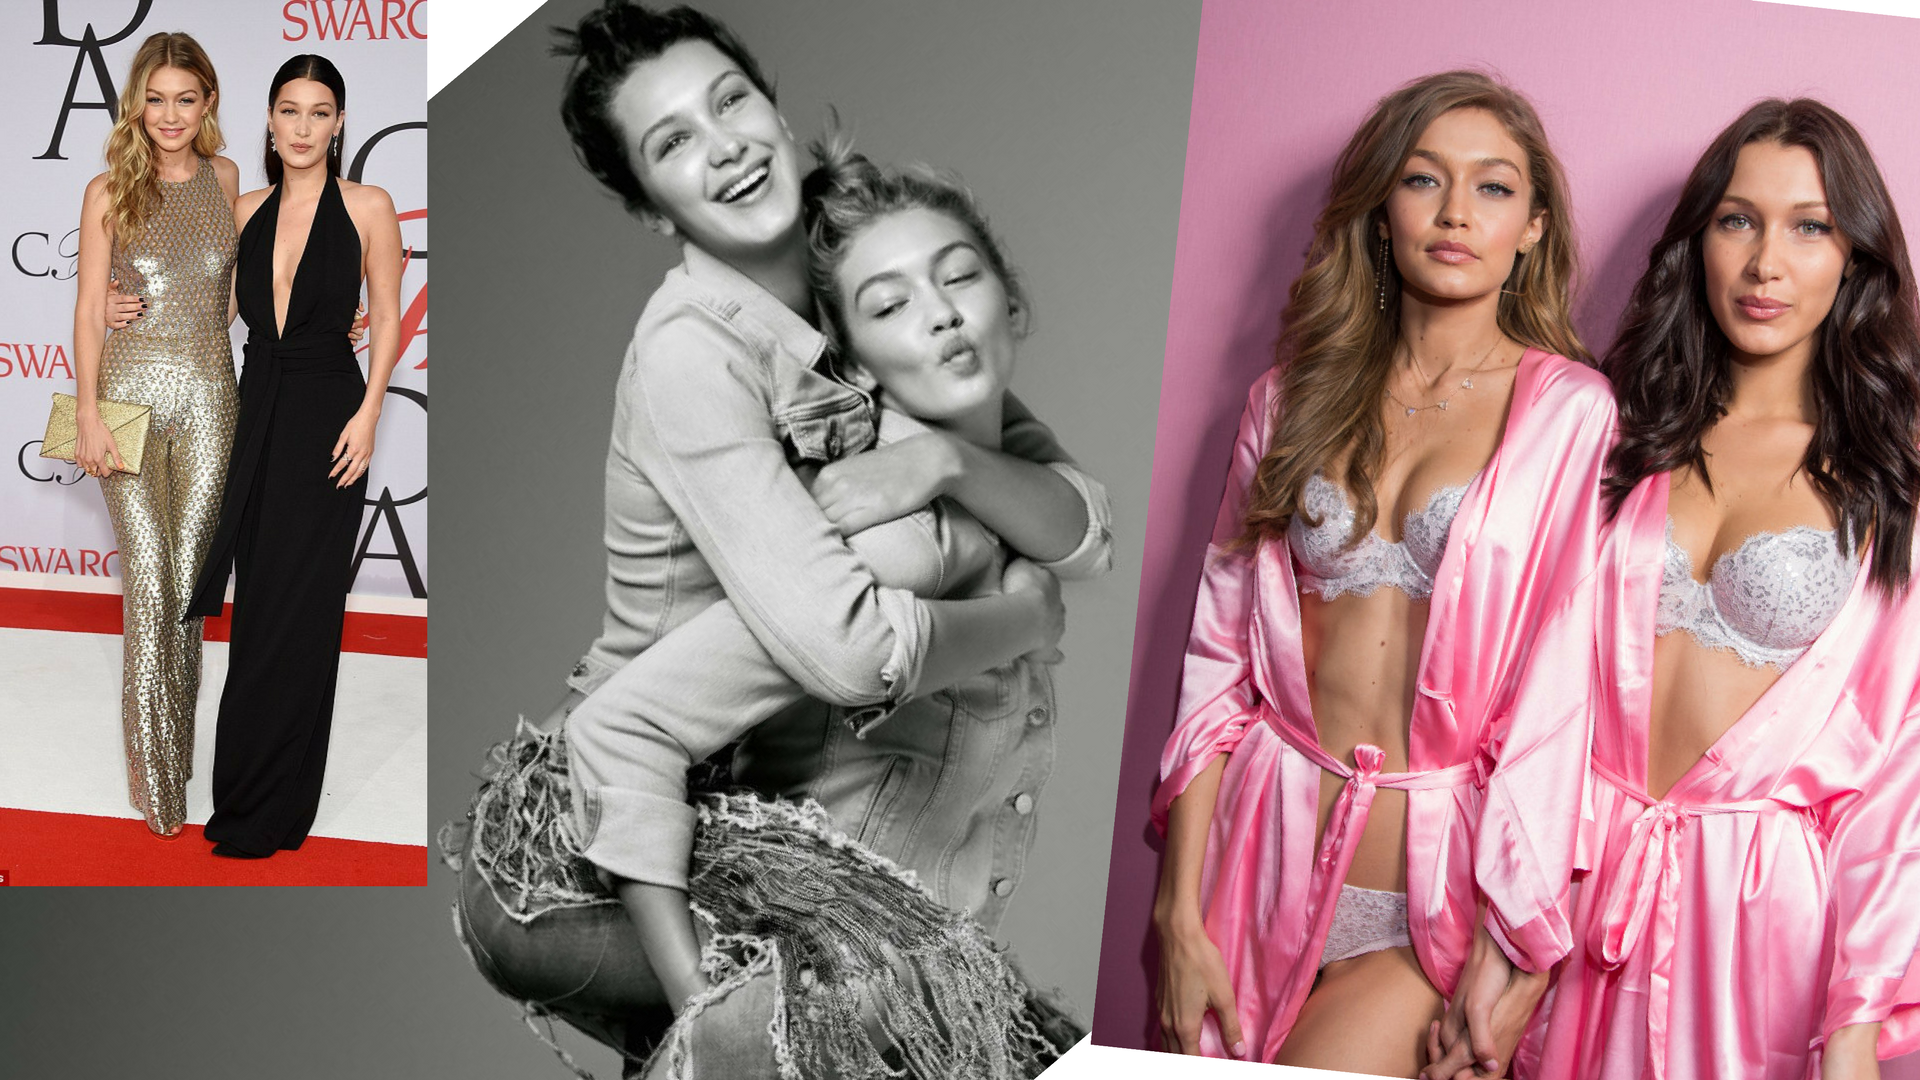 Gigi és Bella Hadid (22 és 21)<br />- a mama a The Real Housewives of Beverly Hills című reality sztárja, apuka üzletember<br />- Gigi: 36.6M, Bella 15.5M Insta követő<br />- Gigi már kétévesen szerepelt egy Guess kampányban – nem lehet elég korán kezdeni!<br />- Bella 16 évesen szerepelt először reklámban